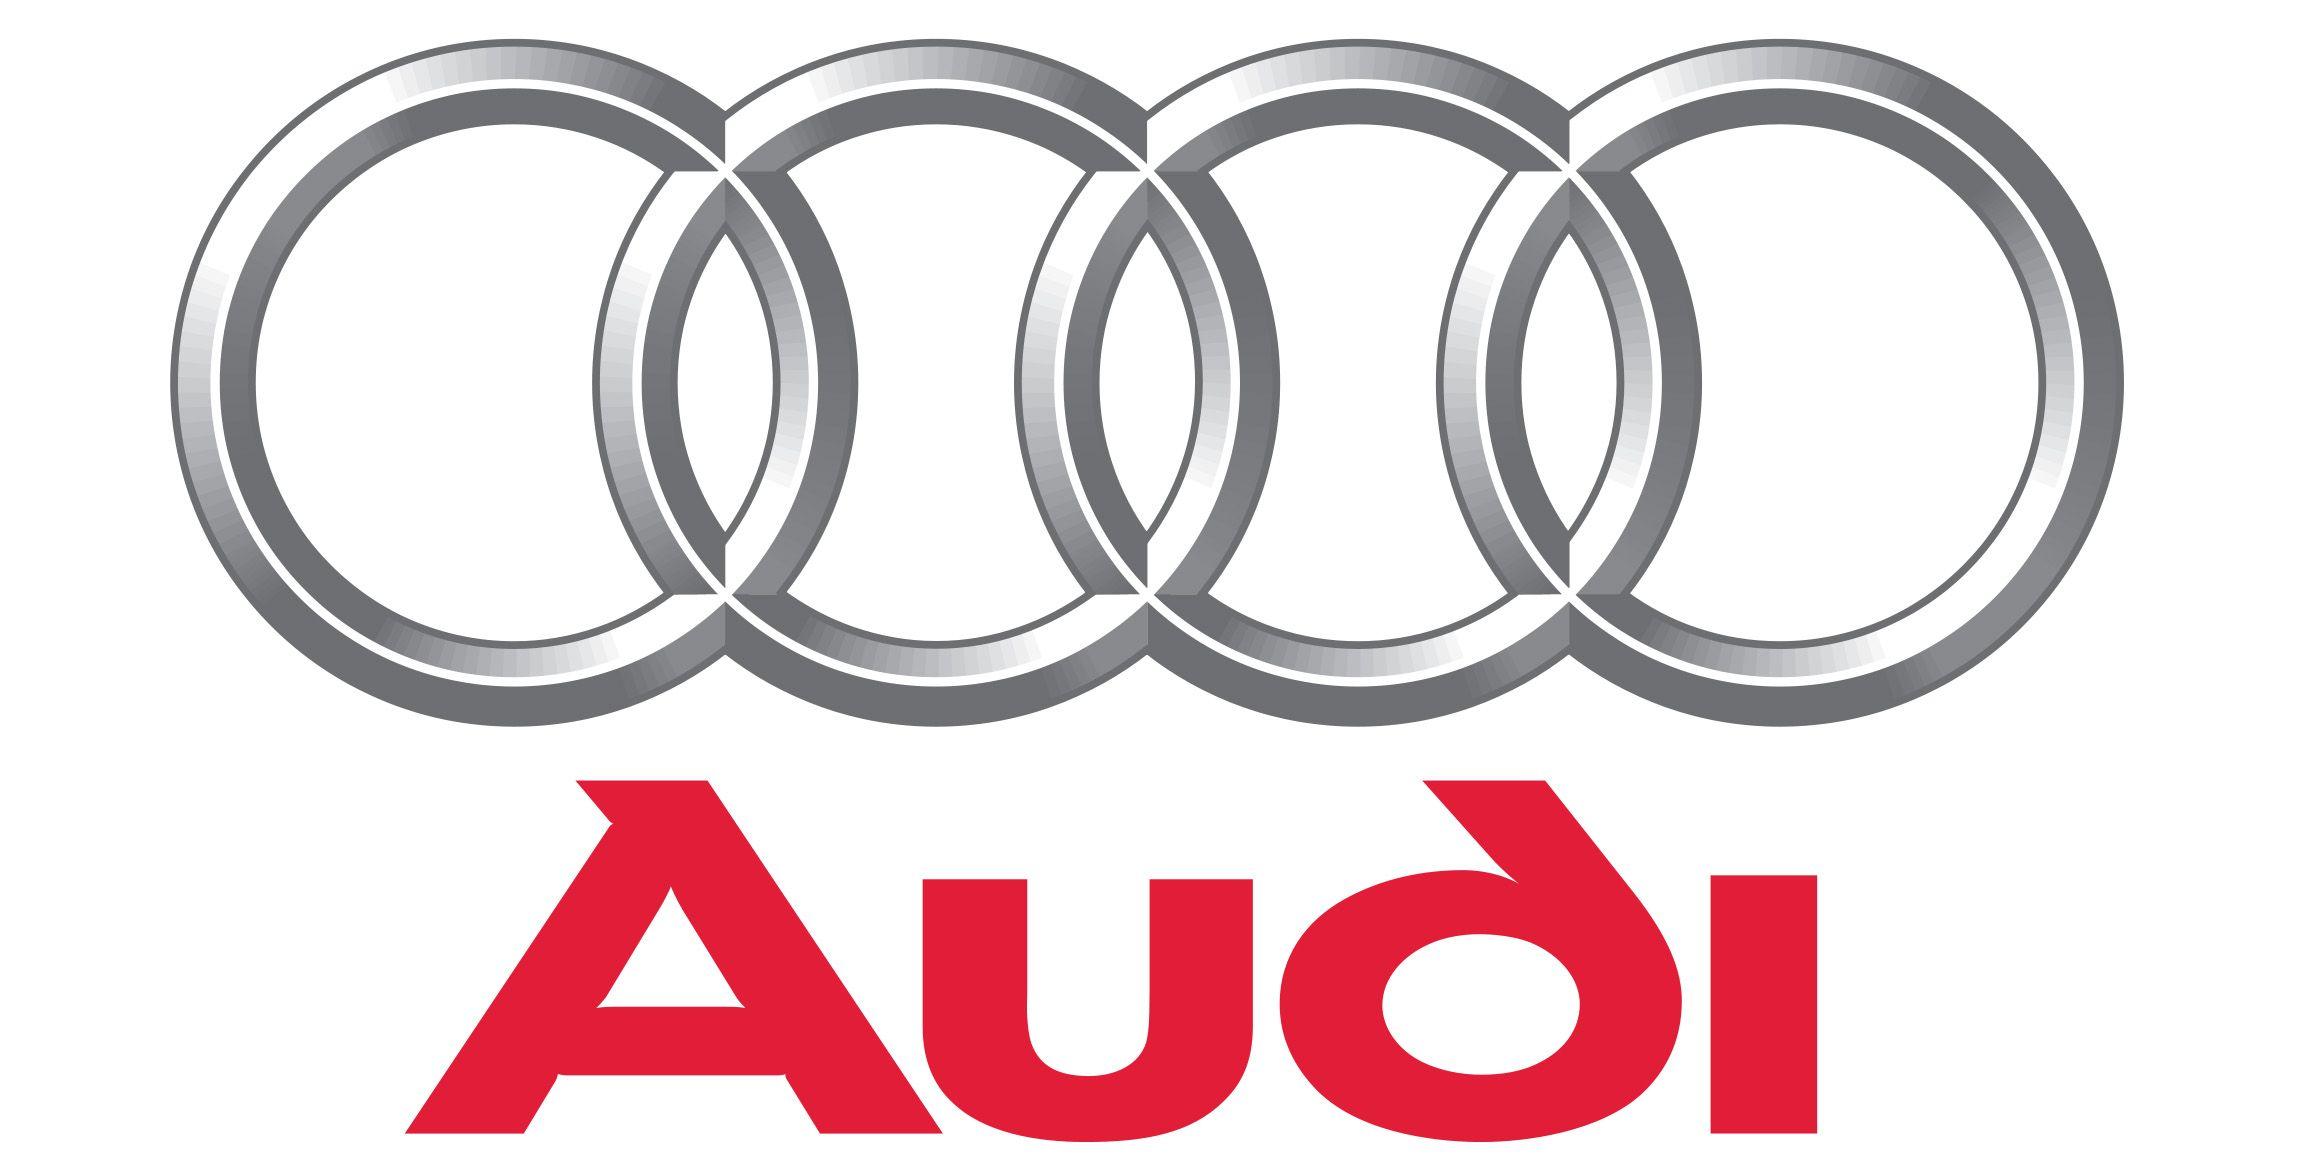 East German Car Manufacturer Logo - German Car Brands | World Cars Brands